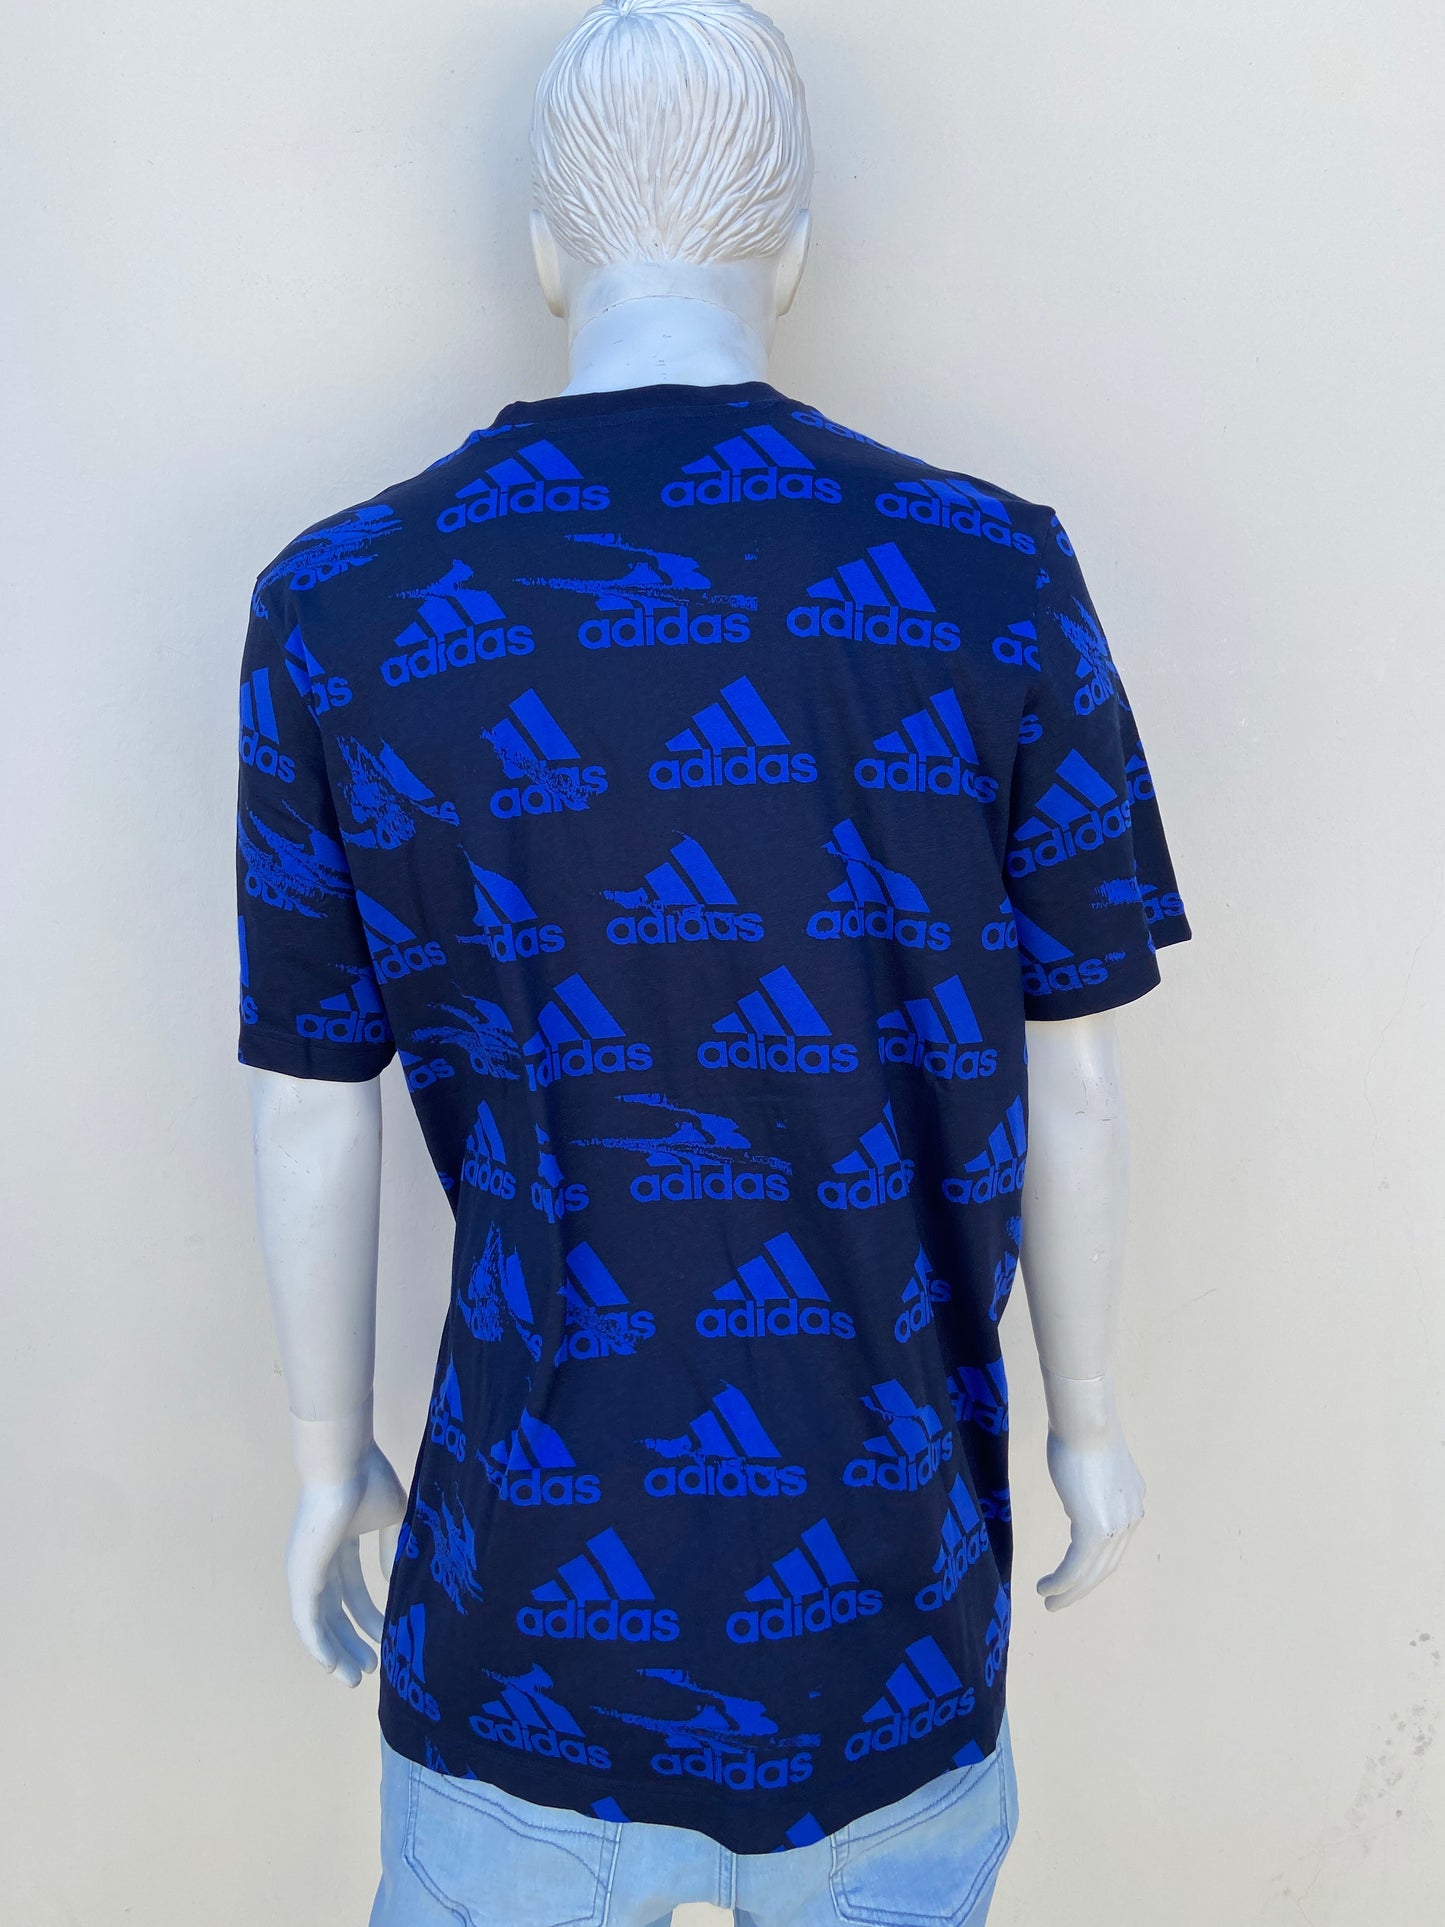 T-shirt Adidas original negro con Estampado de la marca Adidas en color azul.